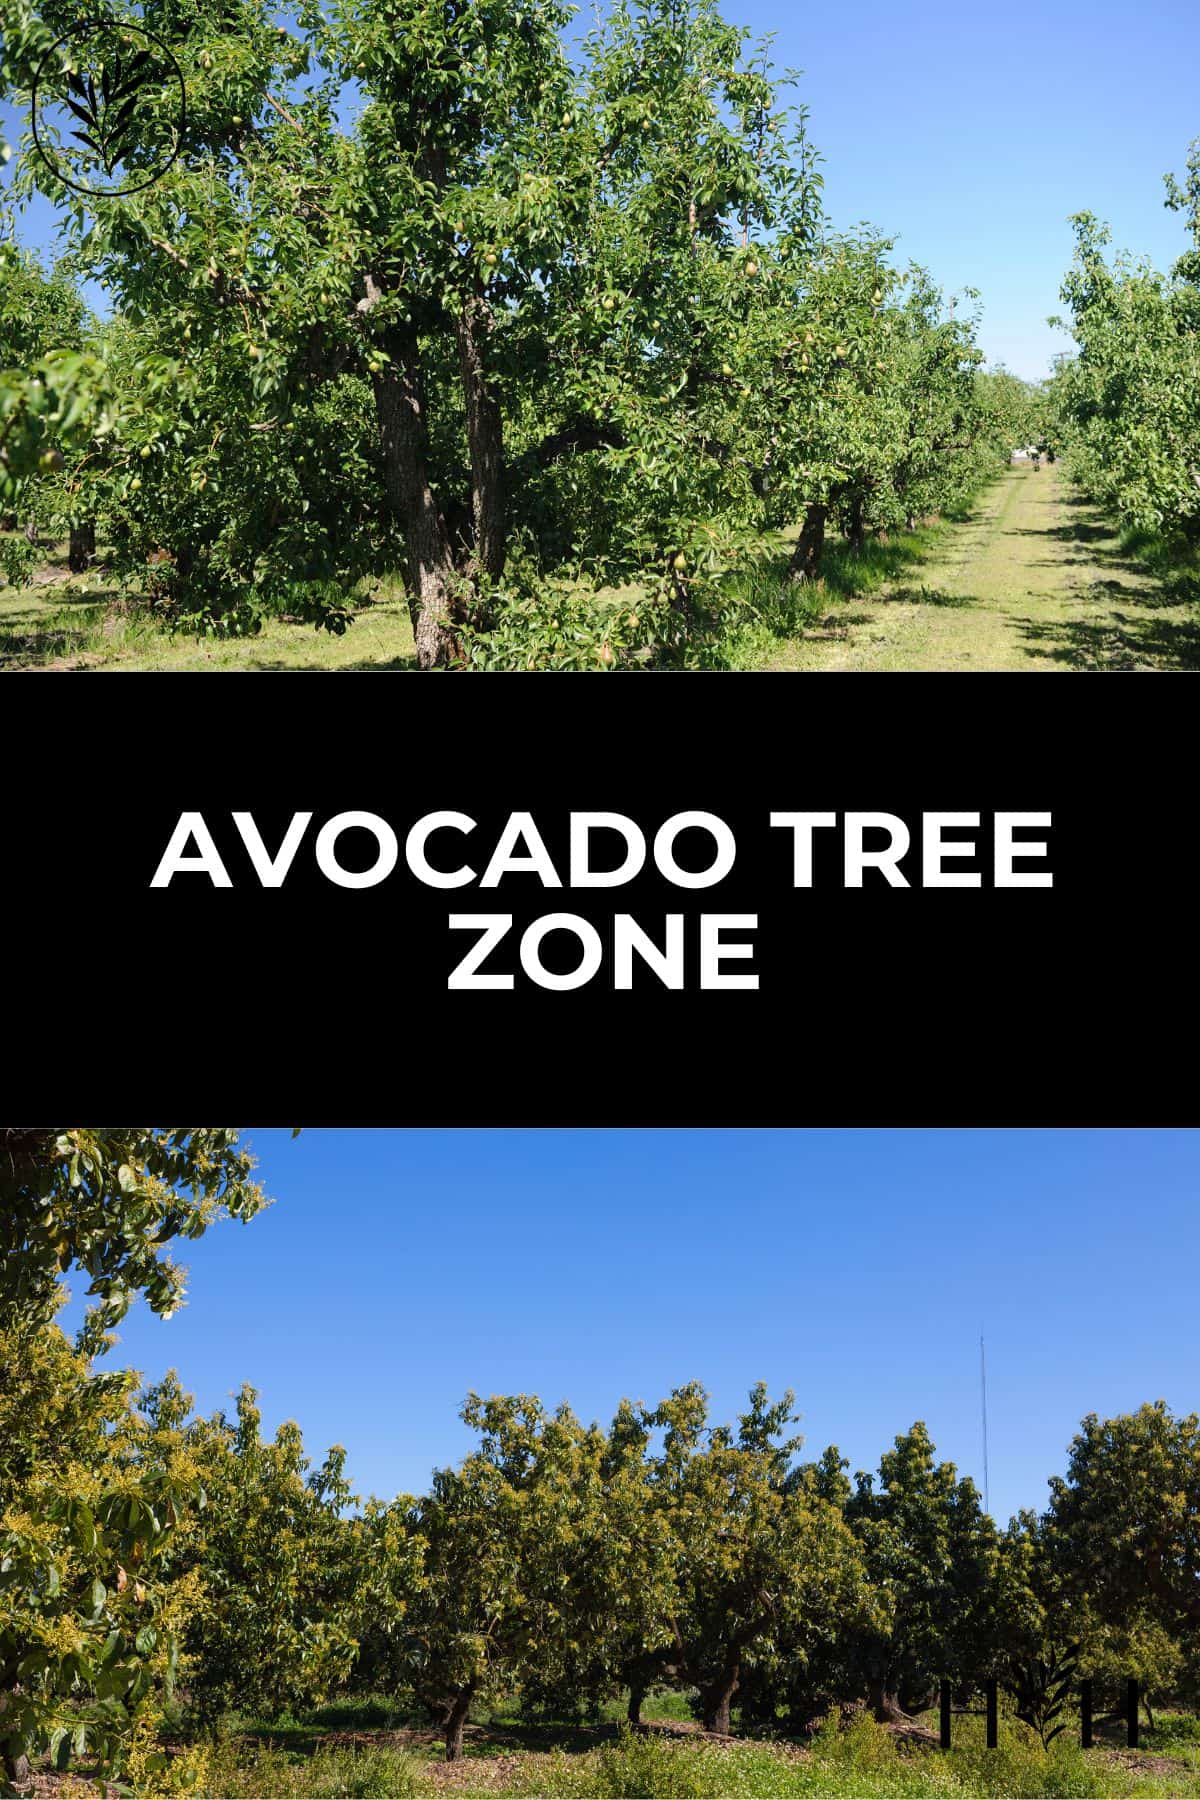 Avocado tree zone via @home4theharvest